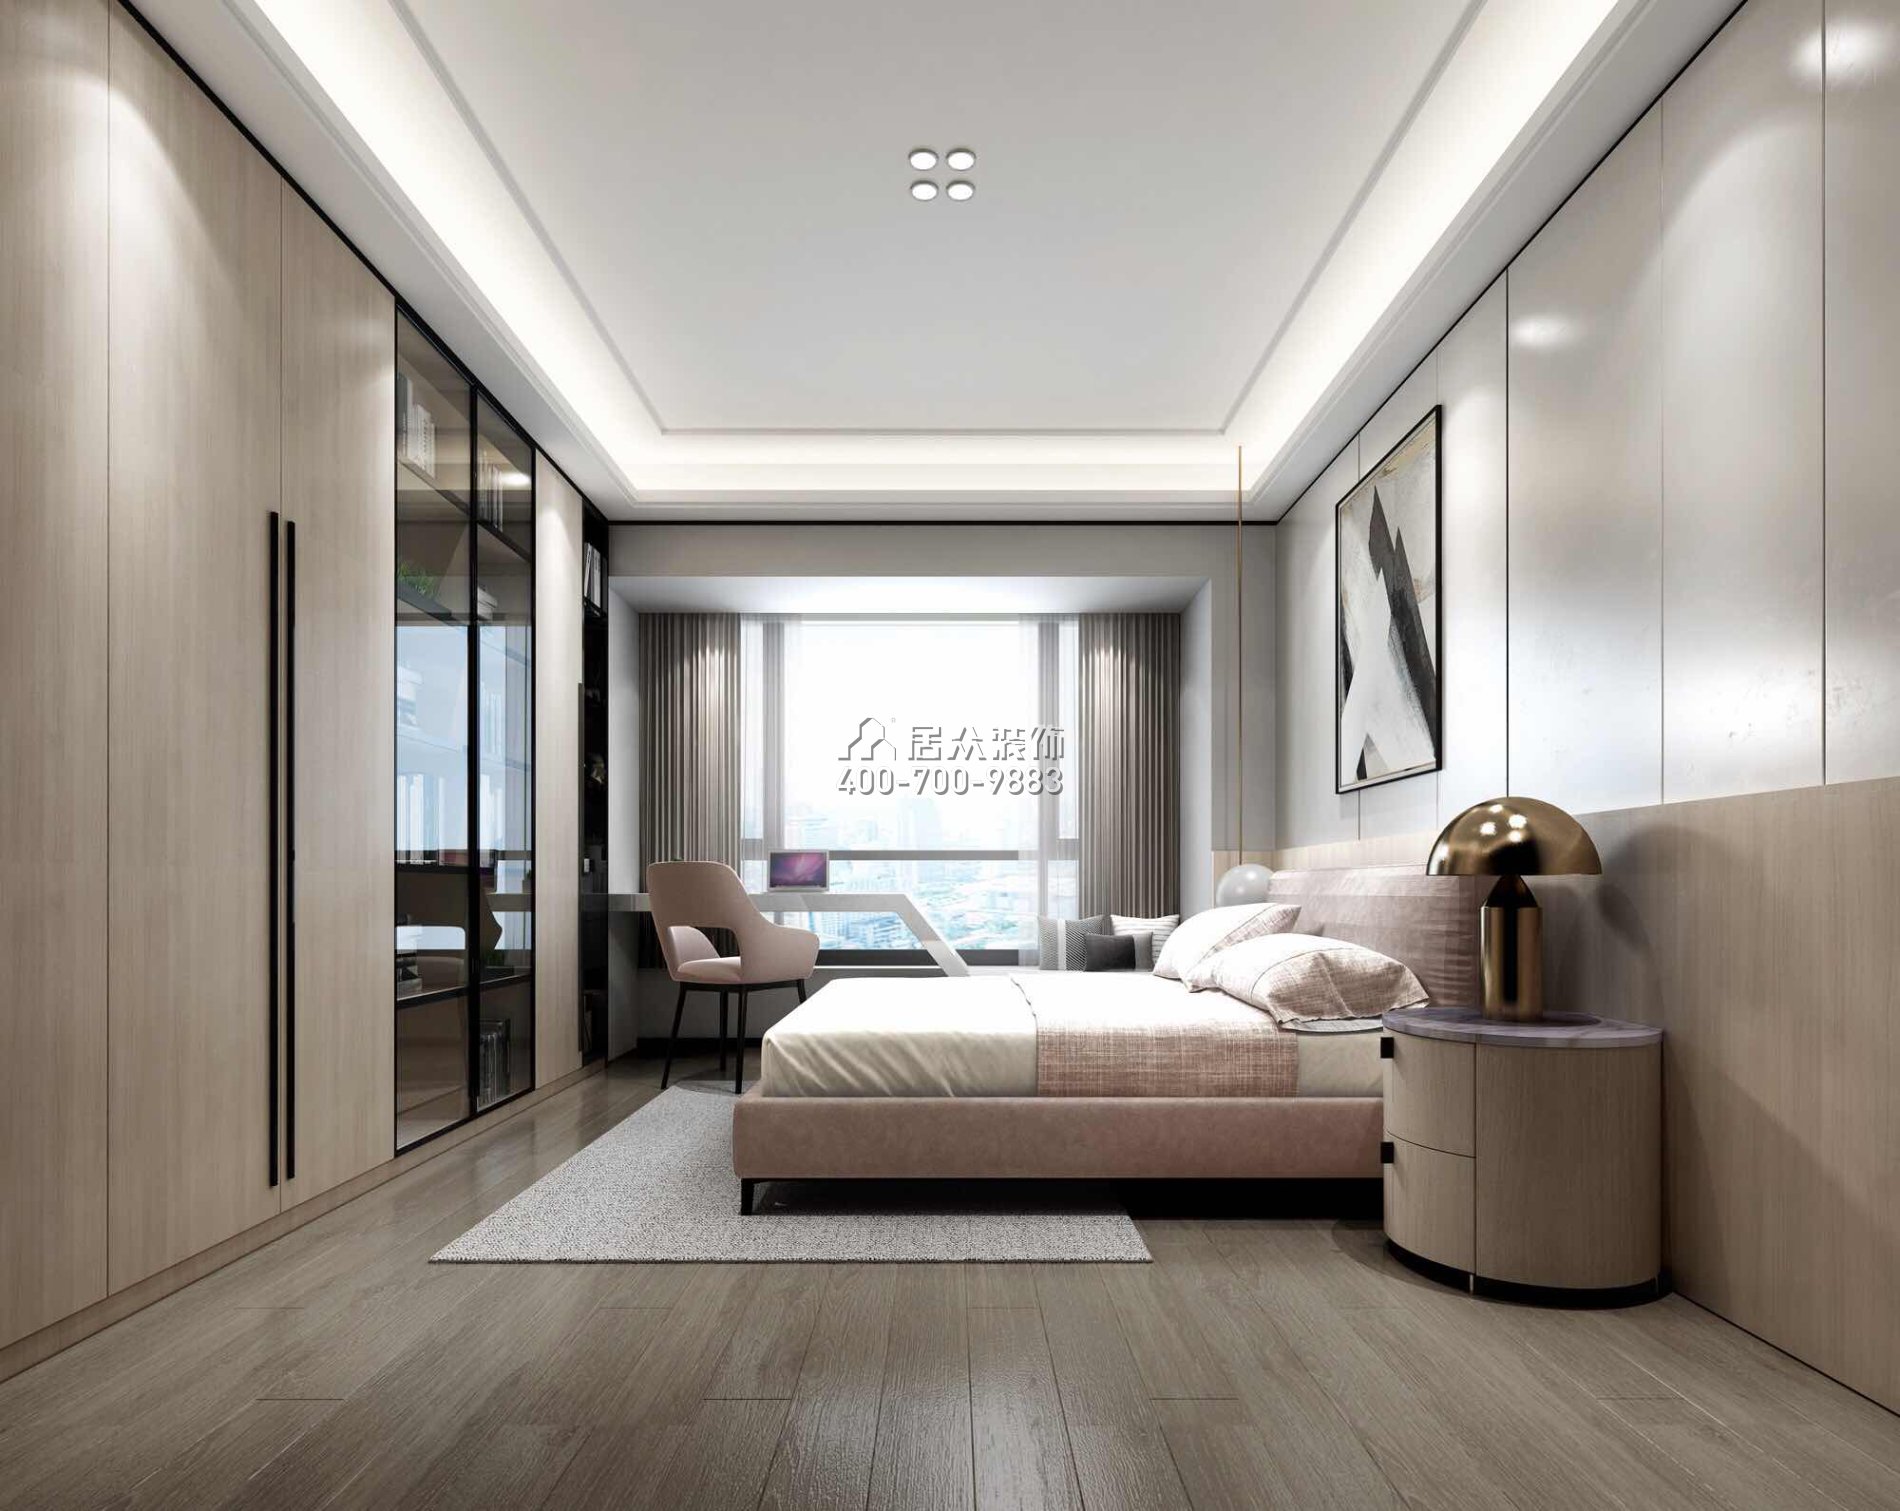 香山美墅四期203平方米現代簡約風格平層戶型臥室裝修效果圖